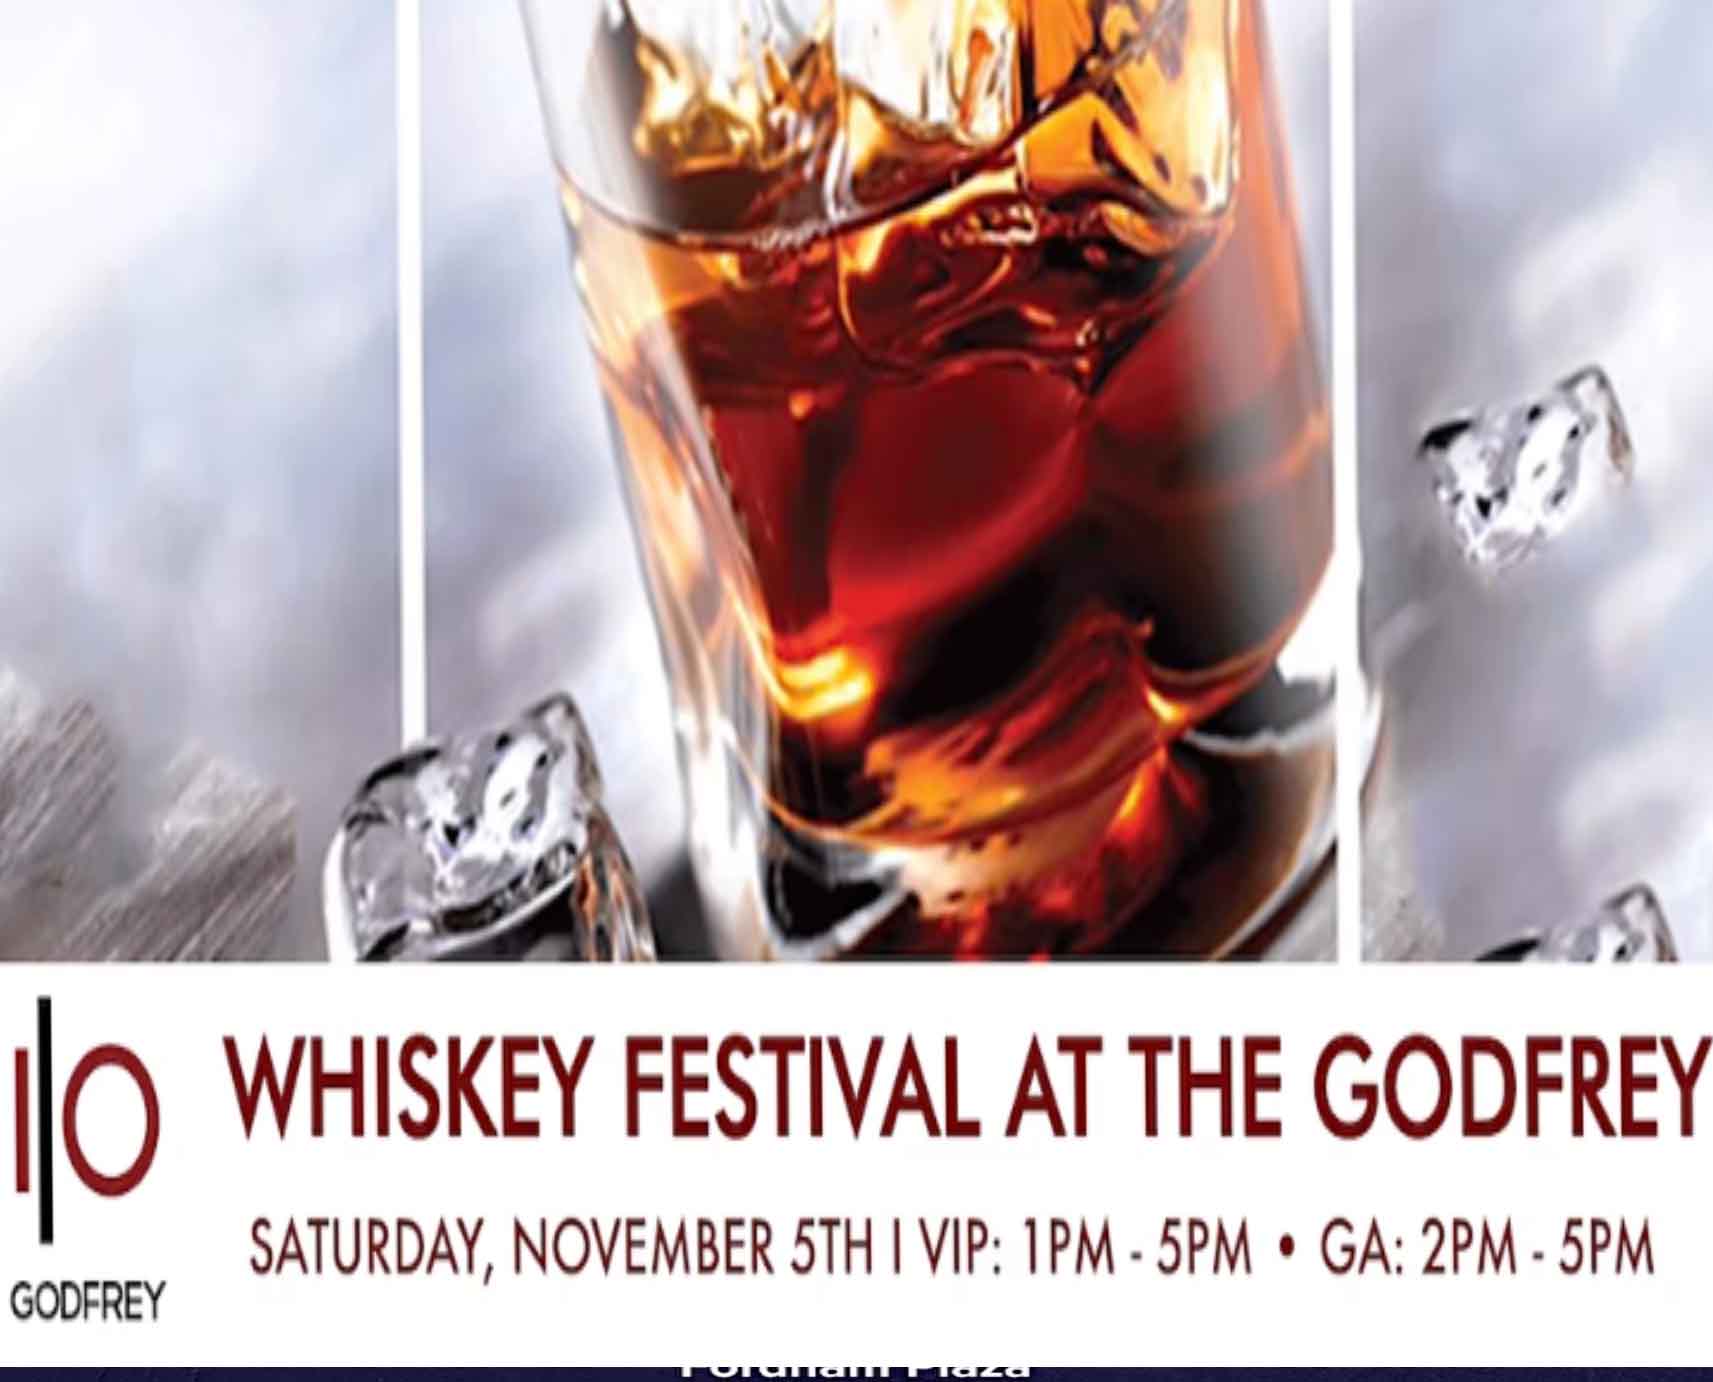 The Godfrey Whiskey Festival